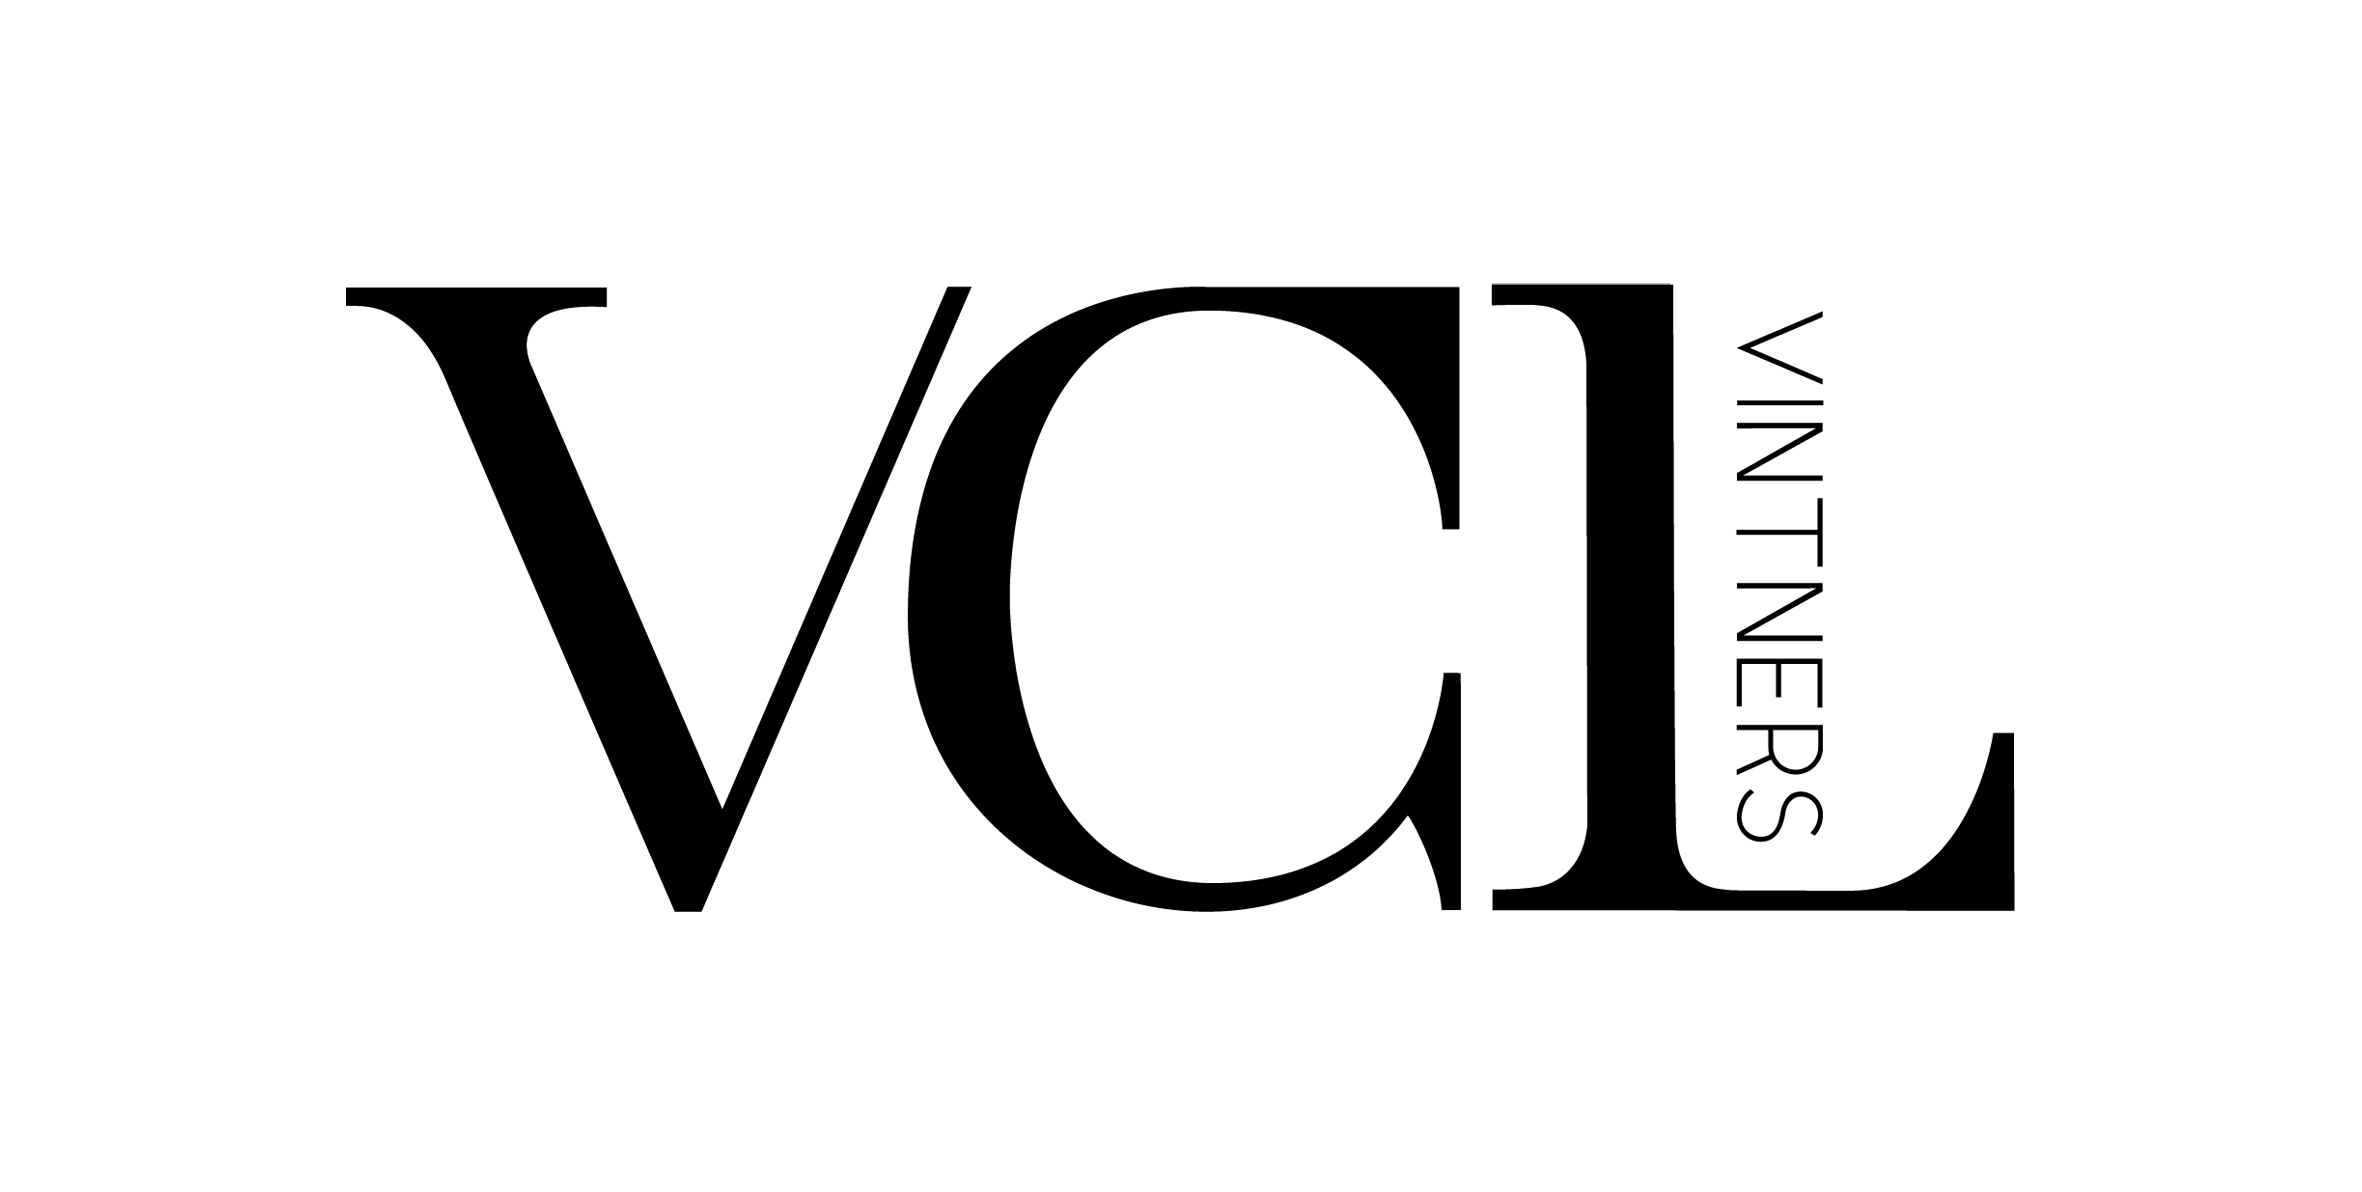 VCL Logo - Client Reviews - VCL Vintners